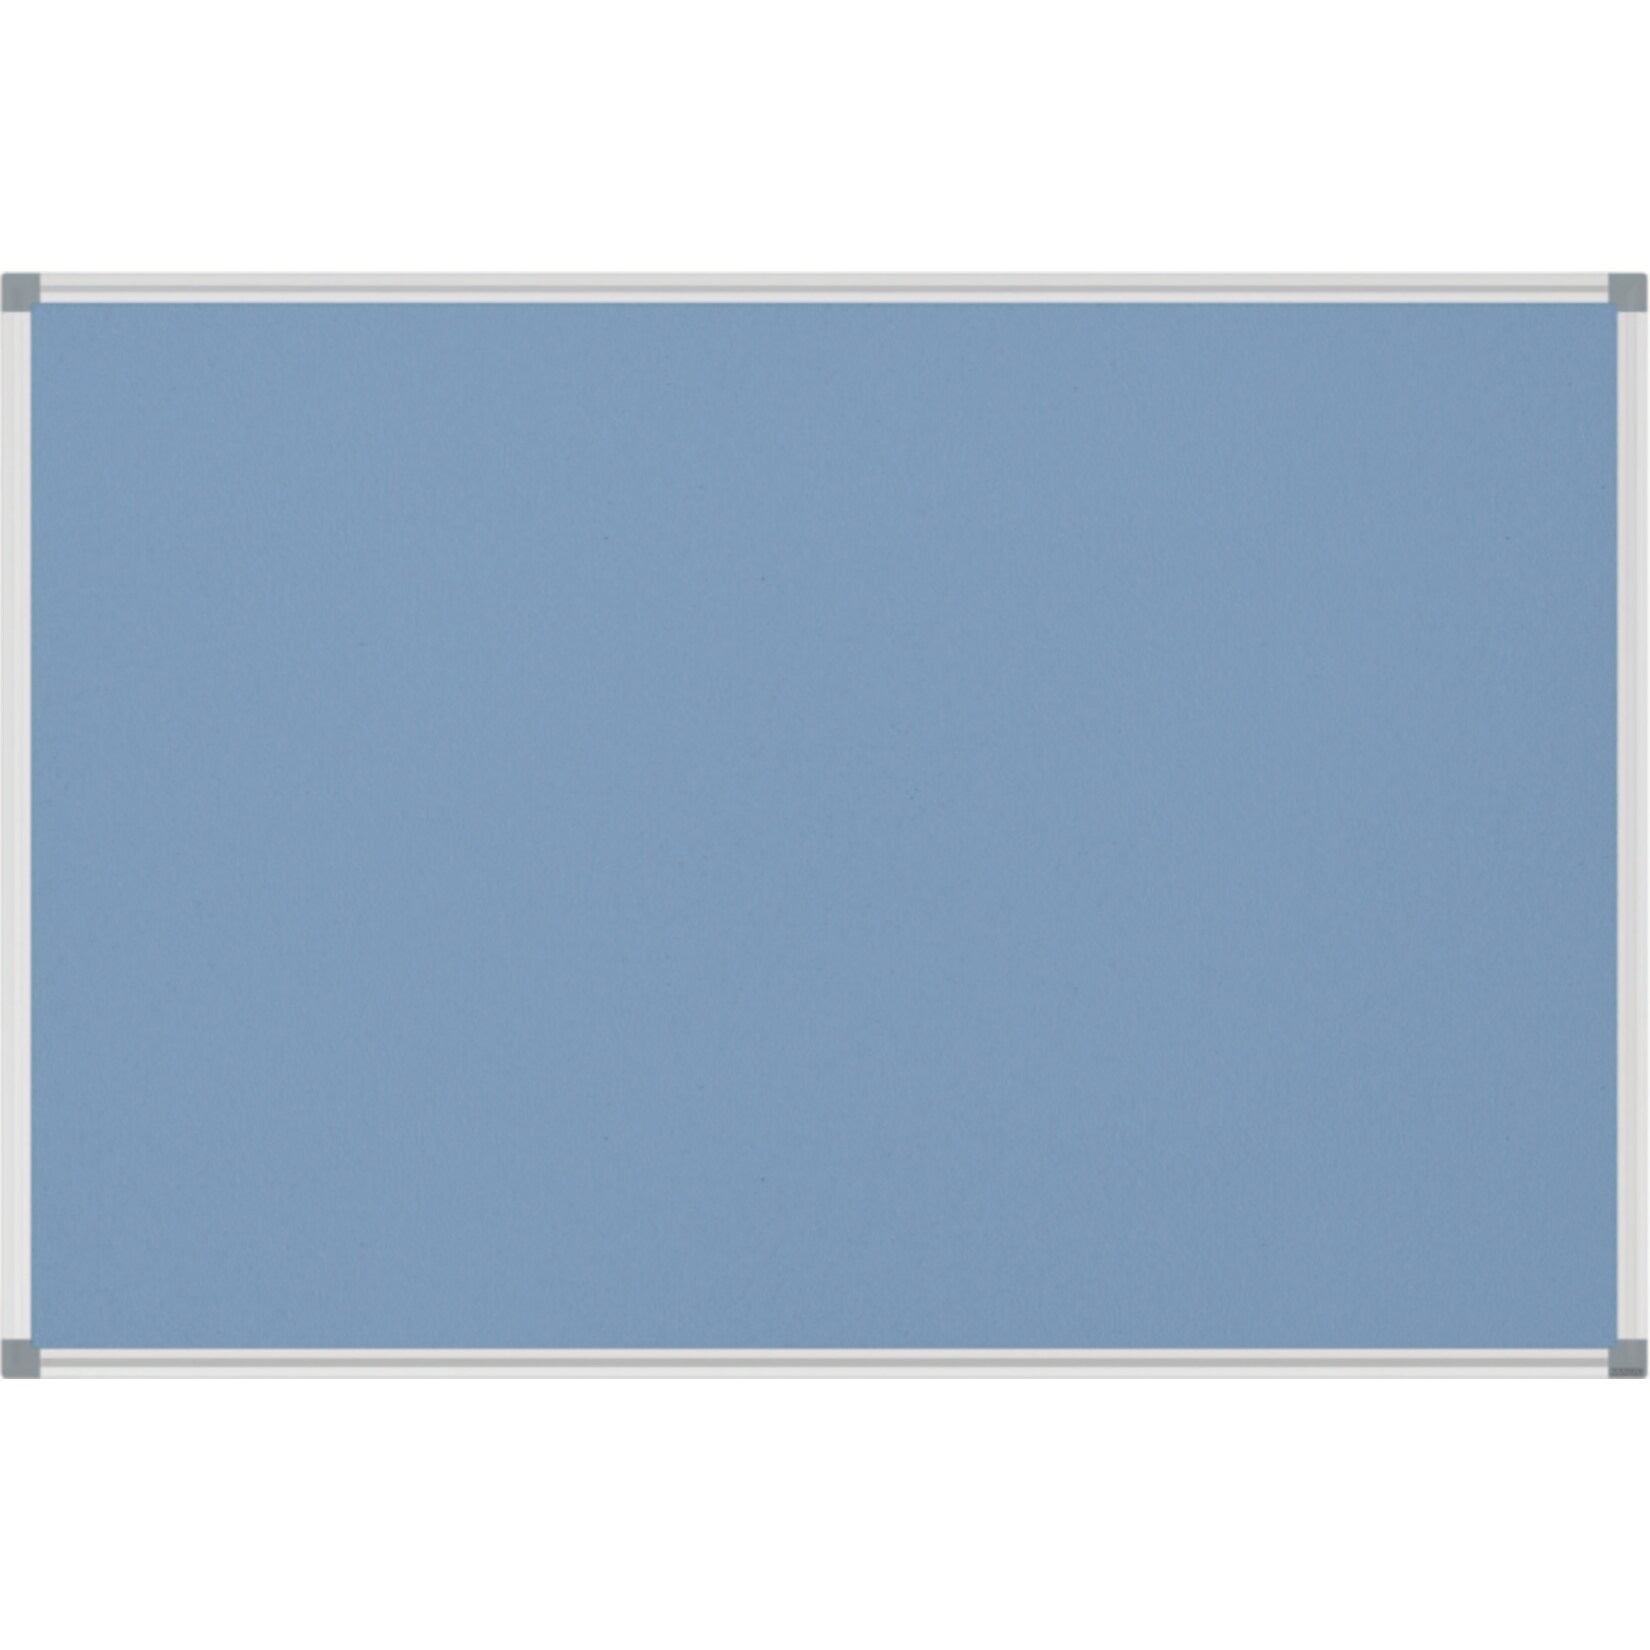 MAUL Pinnboard MAULstandard Textil, 90 x 120 cm  - hellblau